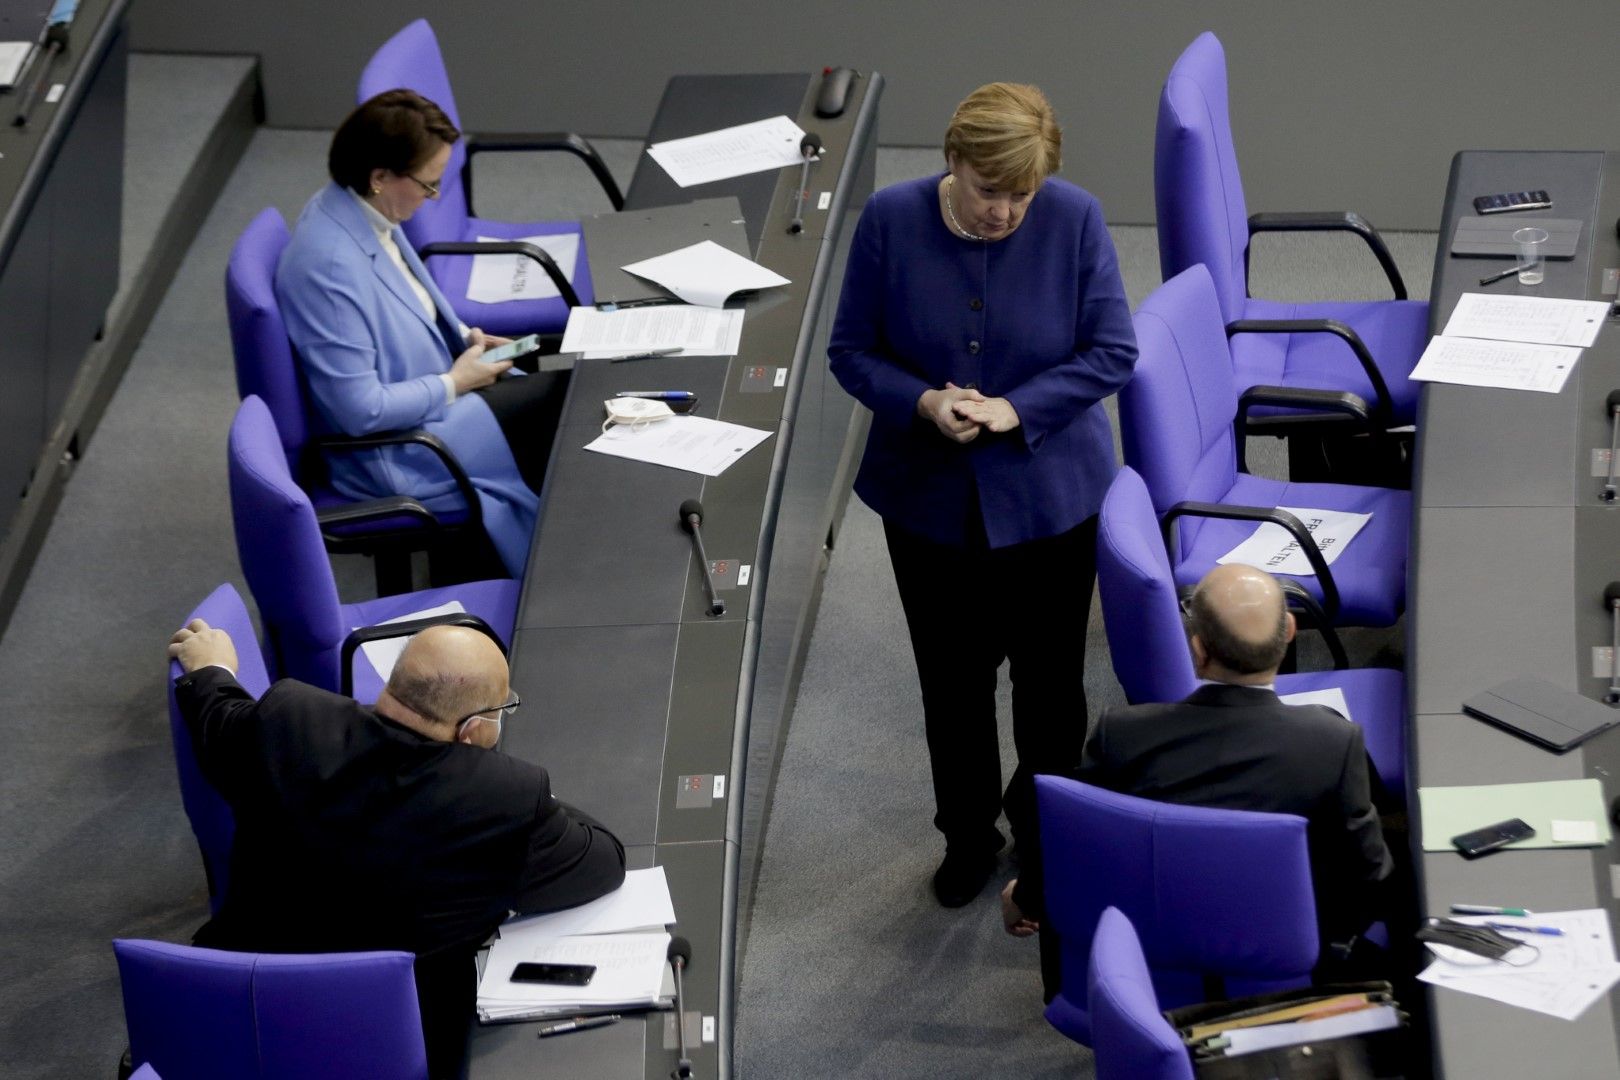 Канцлерът Ангела Меркел разговаря с министрите на икономиката и на финансите Петер Алтмайер (вляво) и Олаф Шолц по време на заседание на Бундестага. Очаква се правителството на Меркел да удължи локдауна зарди пандемията